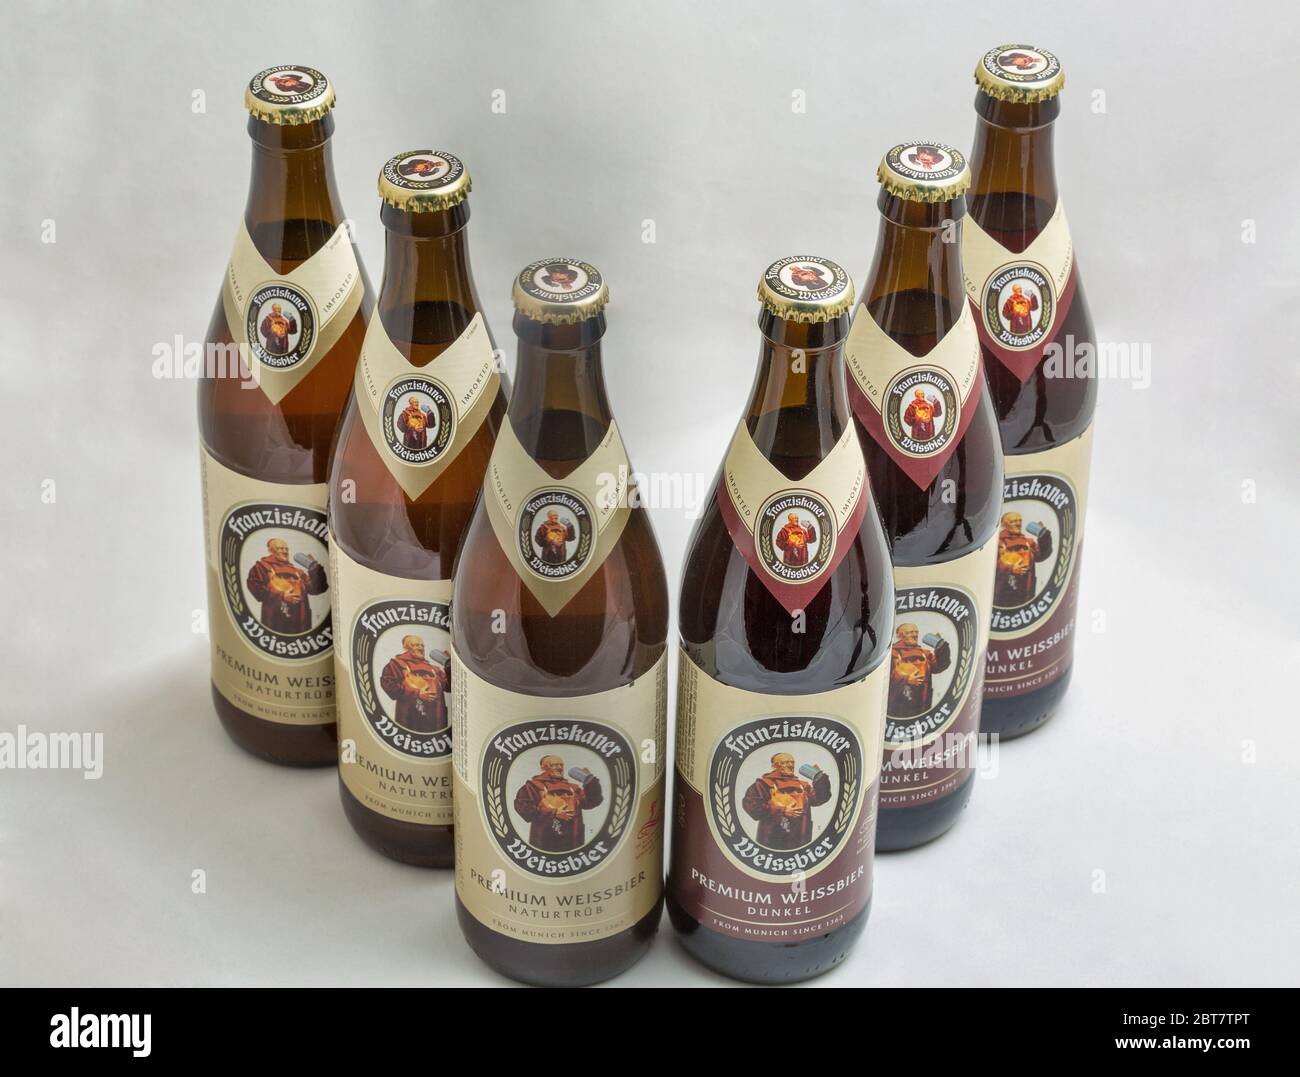 KIEW, UKRAINE - 27. OKTOBER 2019: Franziskaner Weissbier Flaschen auf  weißem Grund. Weizen dunkel und weiß Bier in München gebraut  Stockfotografie - Alamy